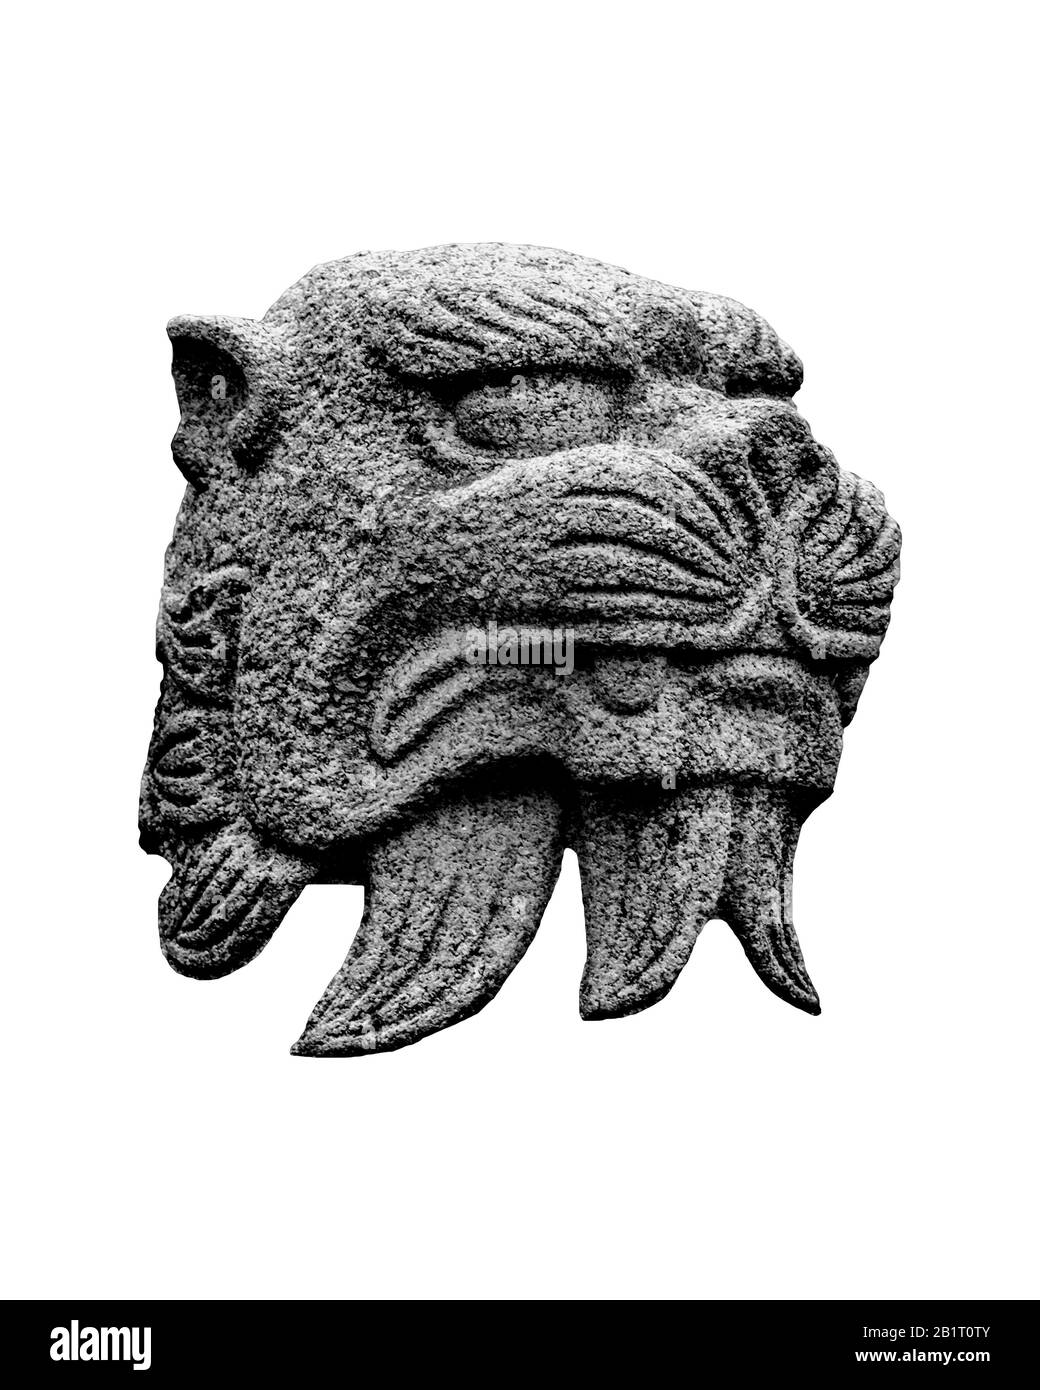 Sculpture de tête de pierre de féline mythique japonaise isolée sur fond blanc Banque D'Images